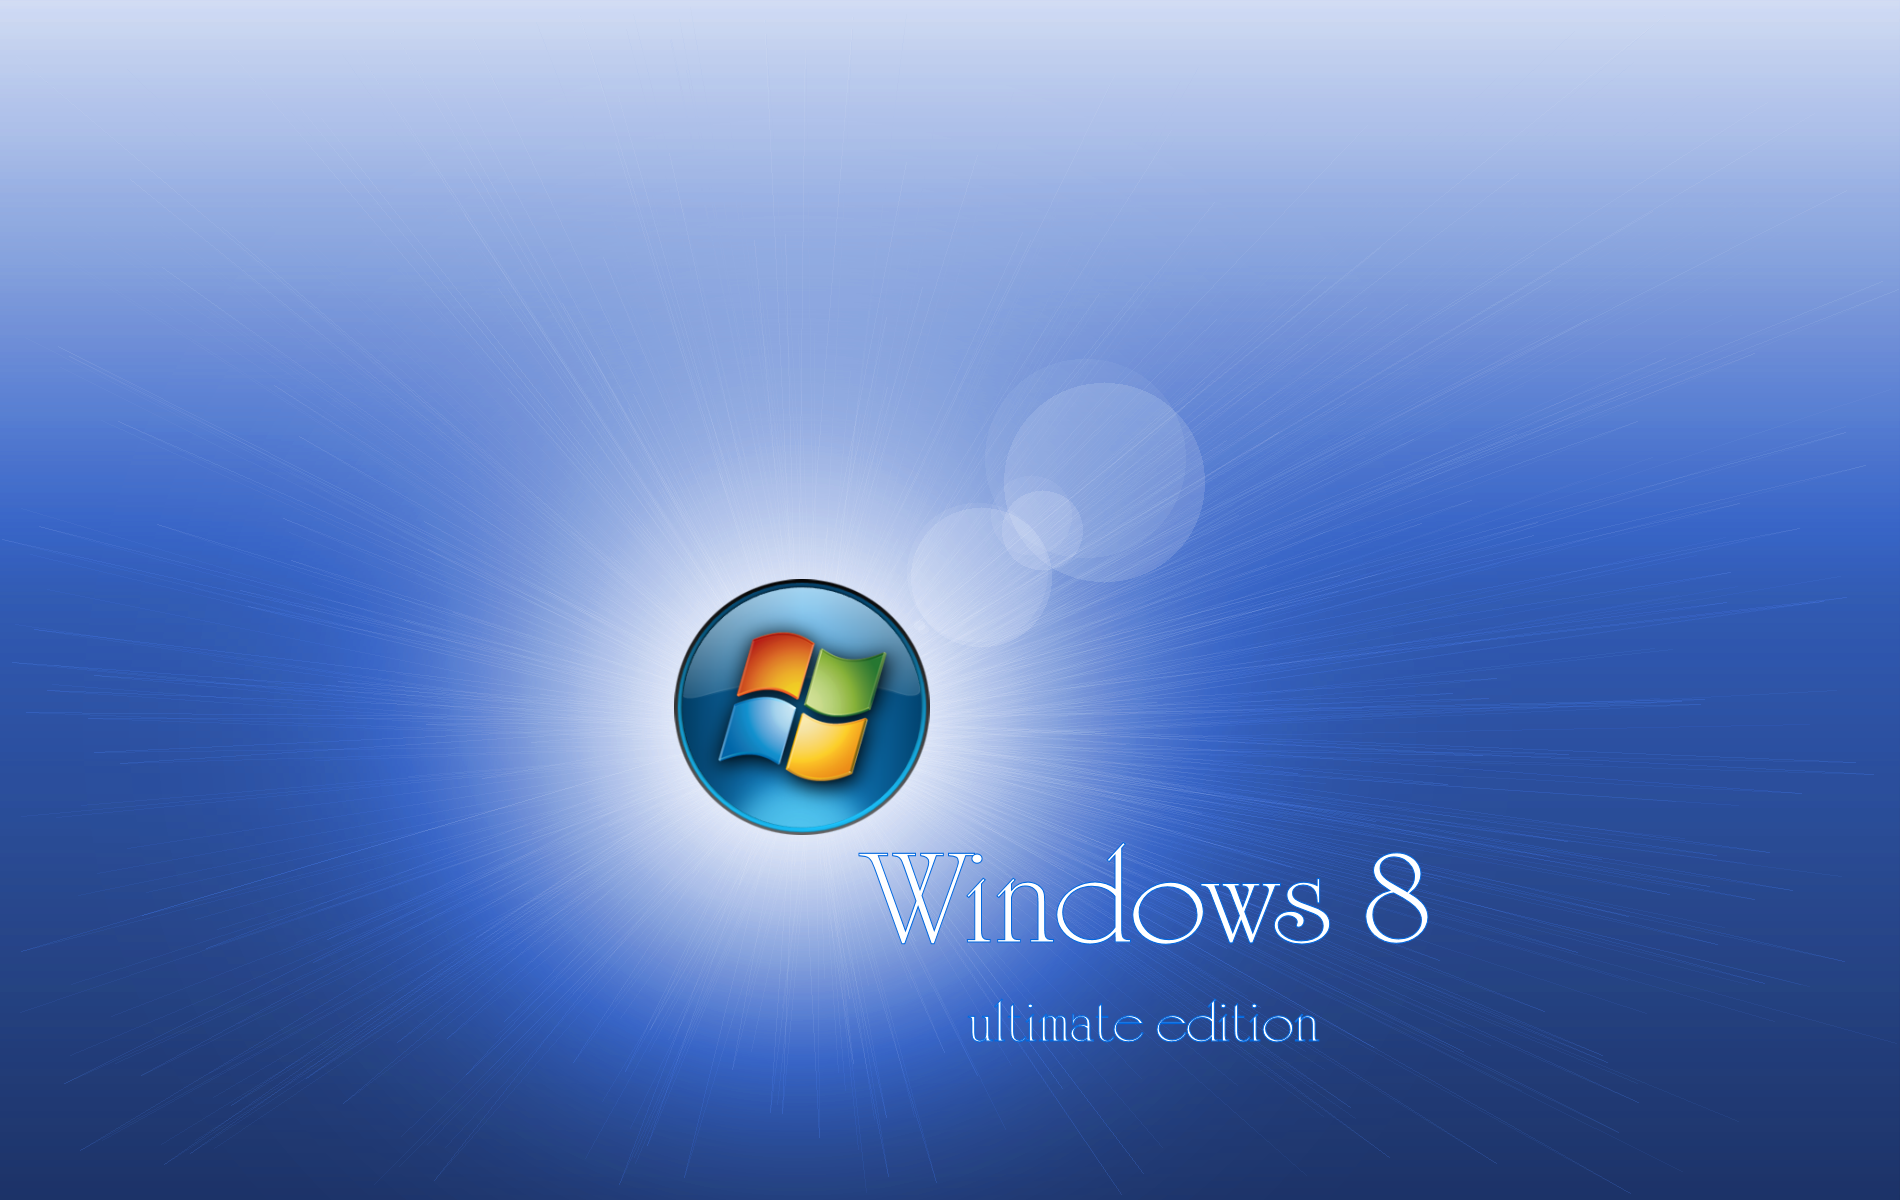 Windows 8 Wallpapers Windows 8 Wallpapers Download Desktop 1900x1200